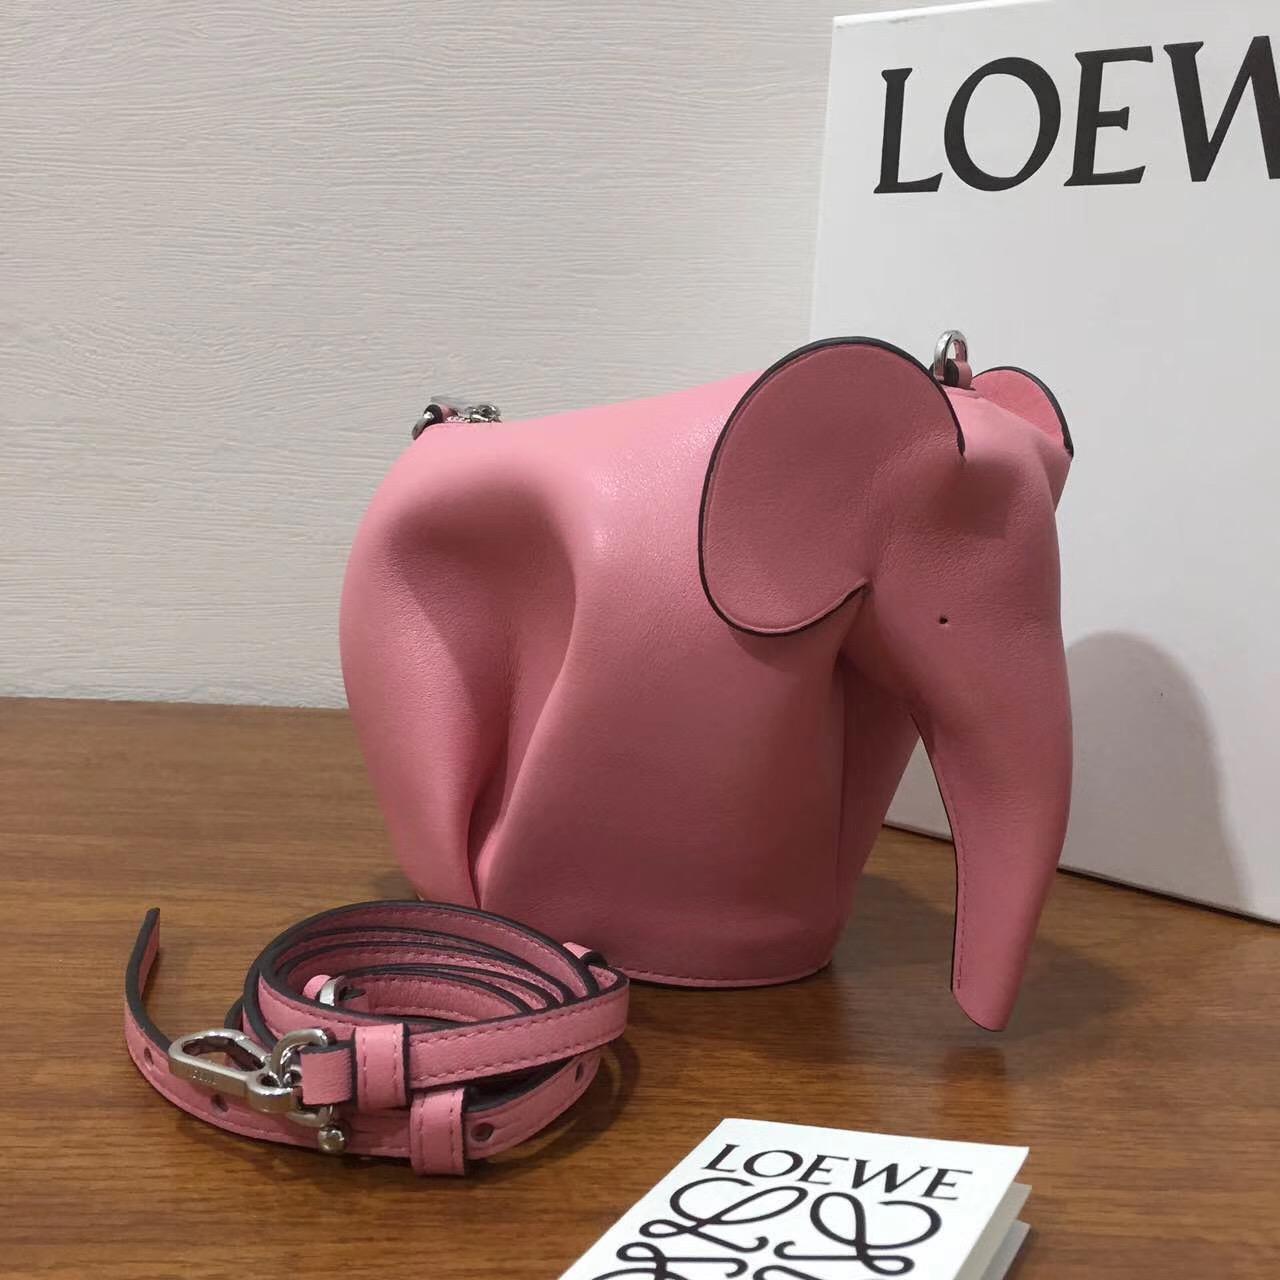 Loewe Elephant Mini Bag 糖果色 粉色 小牛皮 大象造型迷你手袋